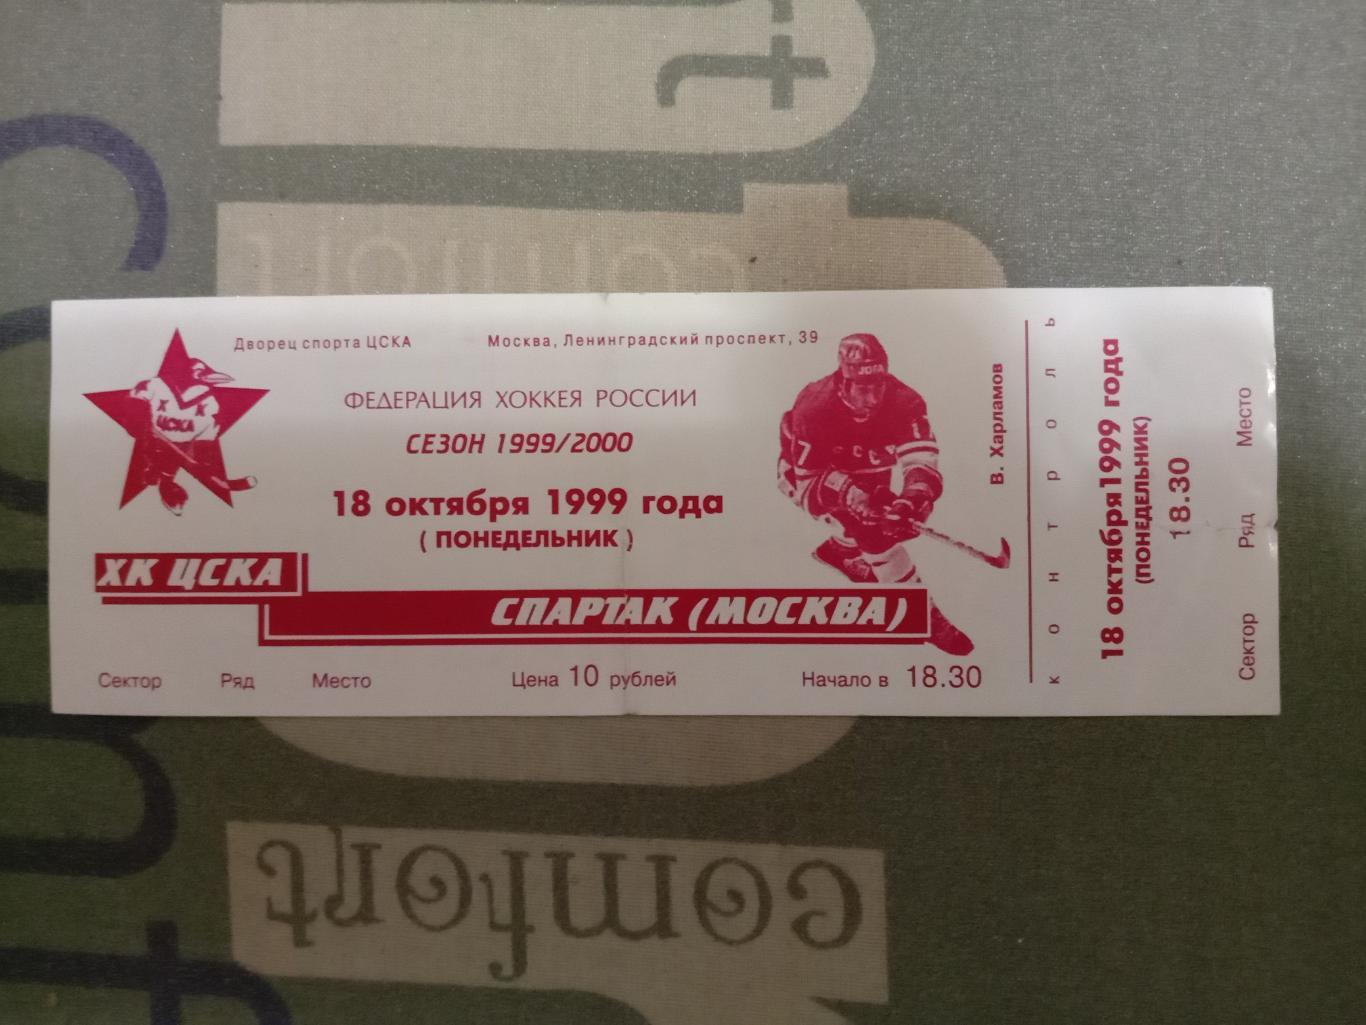 ЦСКА - Спартак Москва. 18 октября 1999 года.